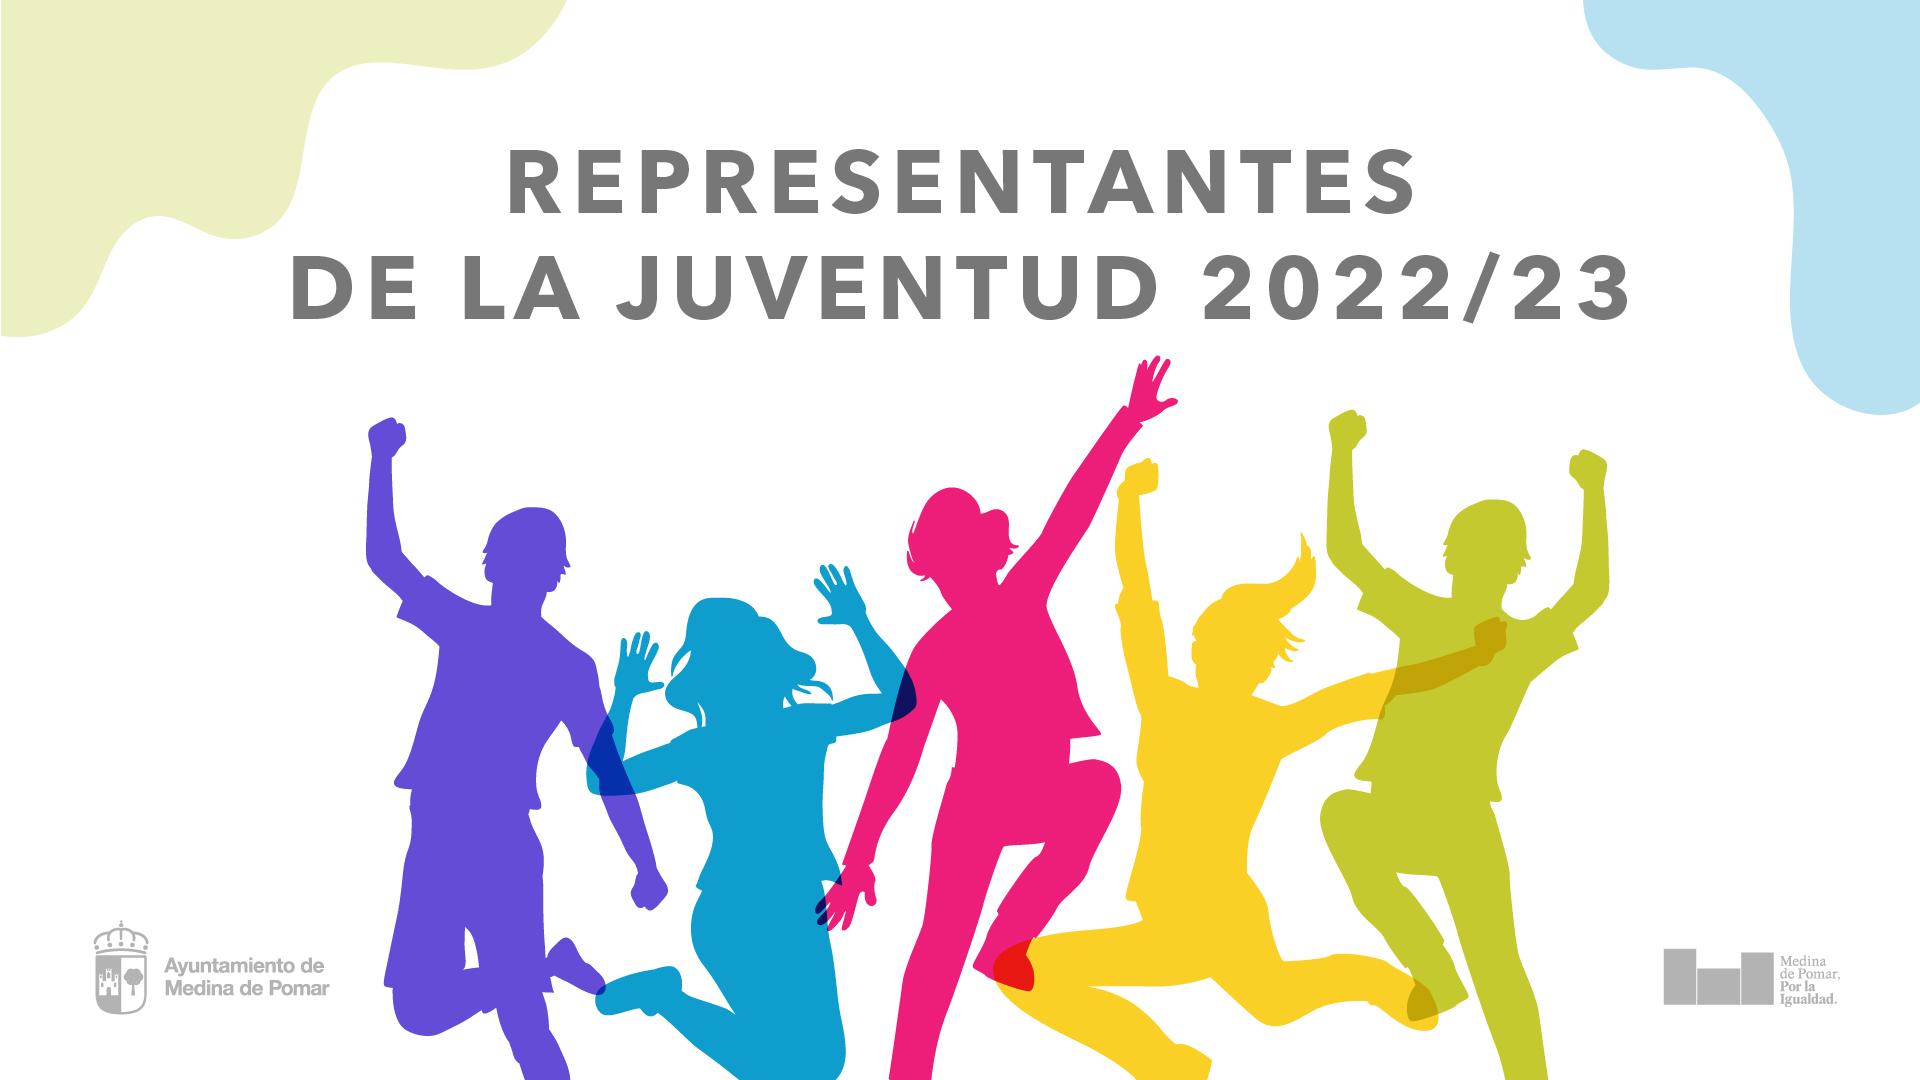 BASES - Representantes de la juventud 2022/23